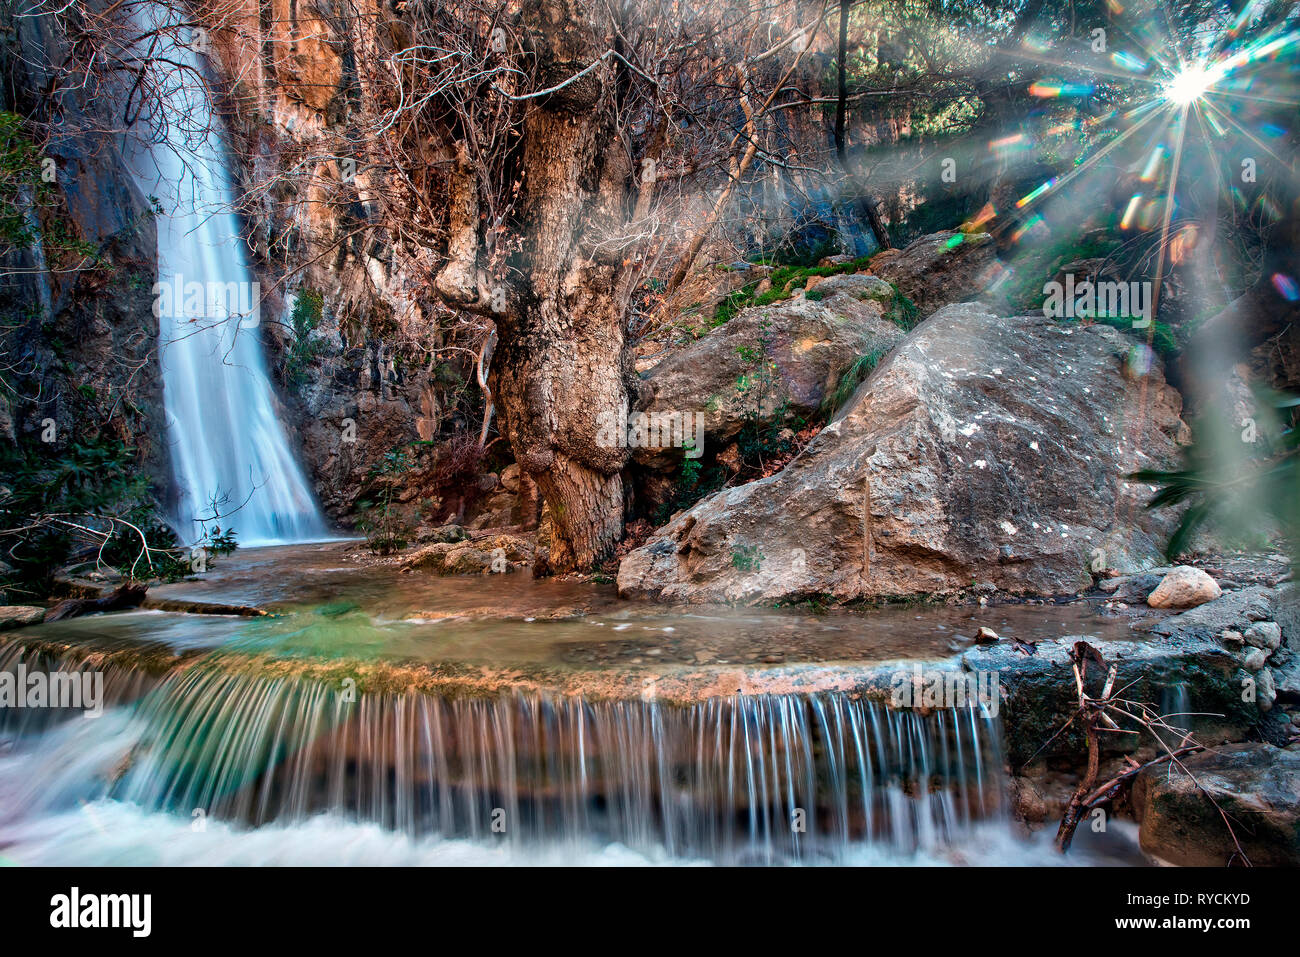 Mylonas waterfall at Kakia Skala, somewhere between Agios Ioannis, Koutsounari and Ferma villages, about 10 km E of Ierapetra, Lasithi, Crete, Greece, Stock Photo